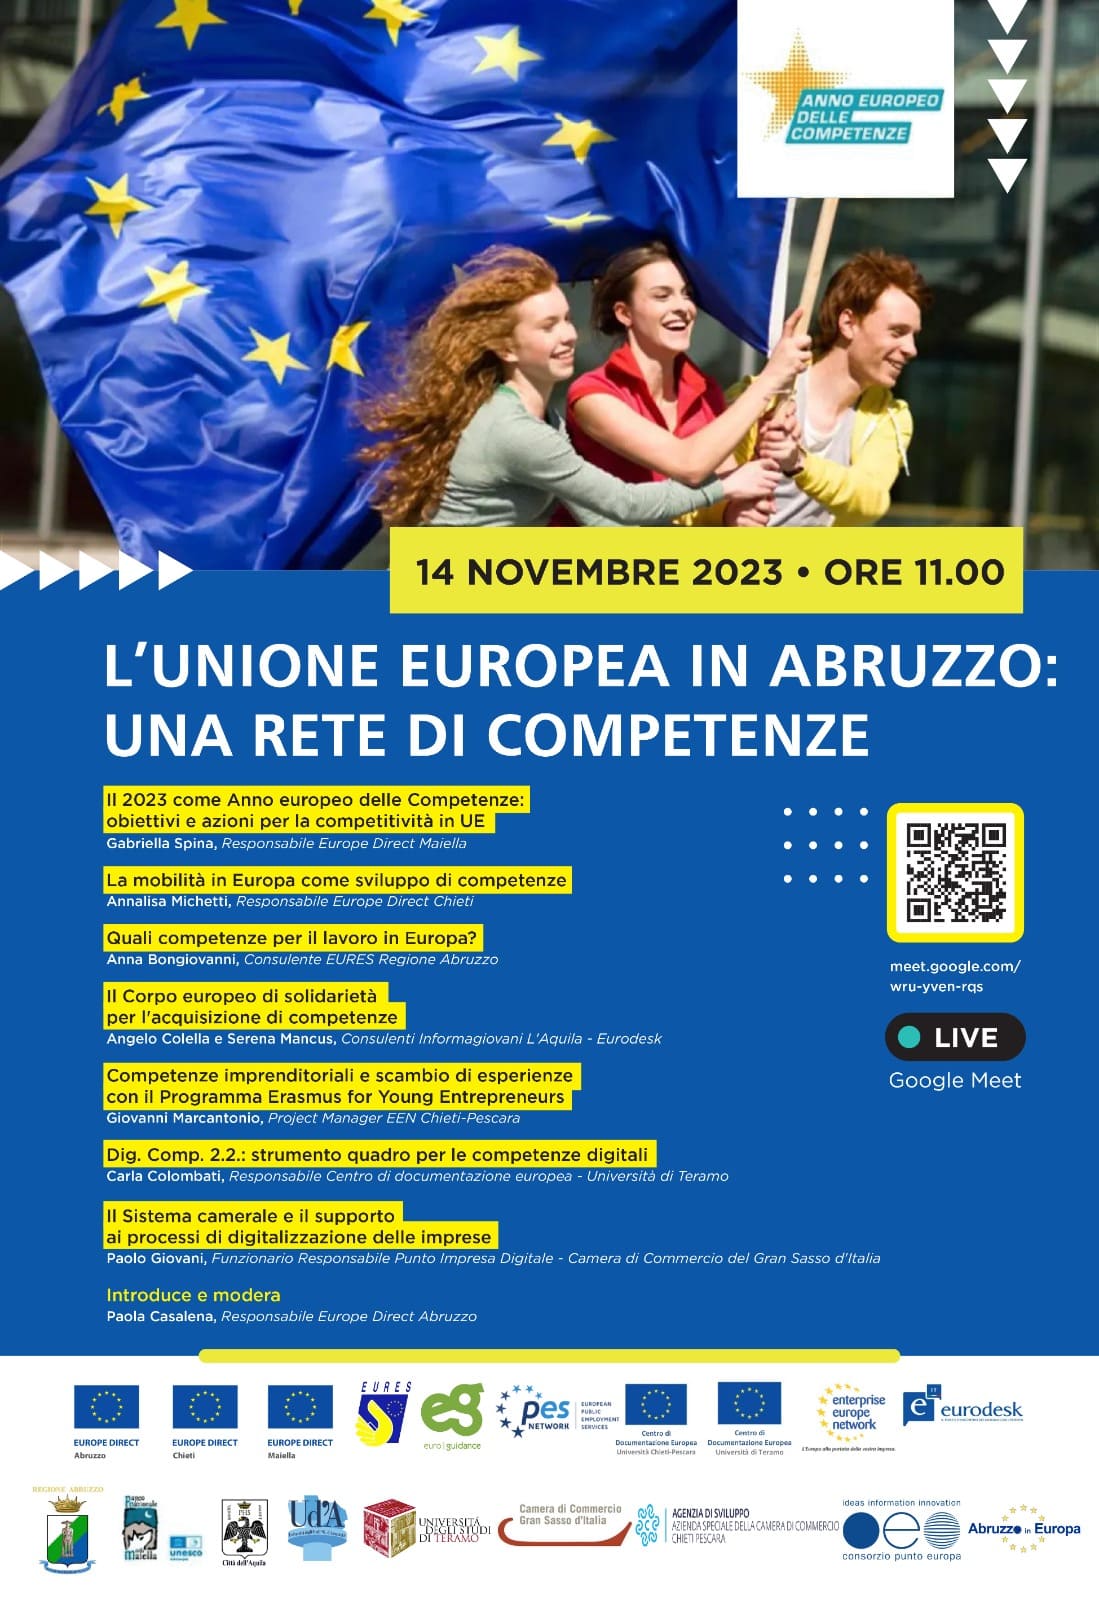 Evento online "L'Unione Europea in Abruzzo: una rete di competenze" - CDE Università di Teramo 